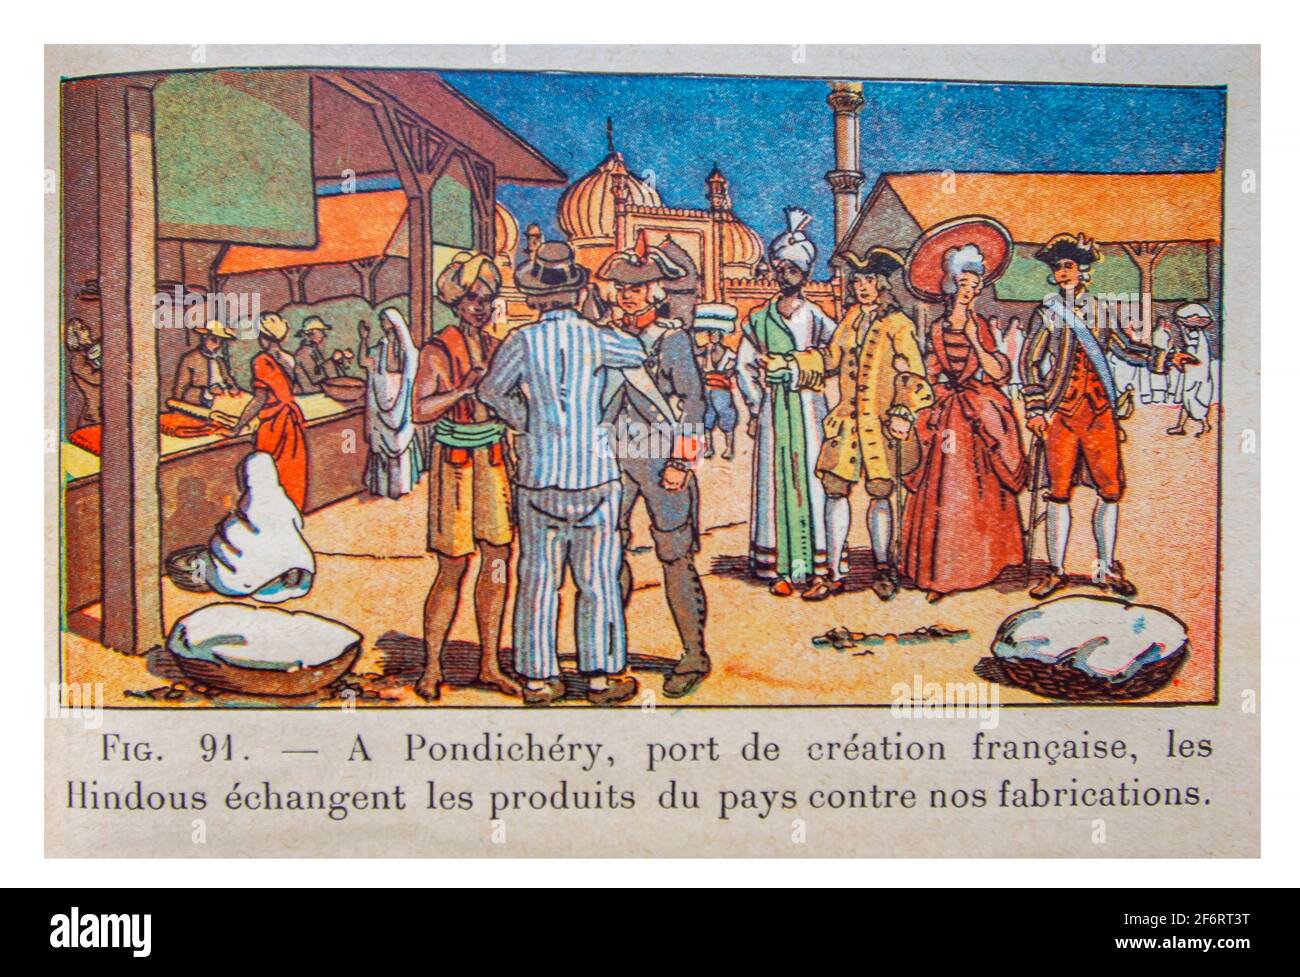 Geschichte, Kolonisierung in Pondichery, Hafen der französischen Schöpfung, tauschen die Hindoux die Produkte des Landes gegen unsere Fabrikata aus. (Histoire de Stockfoto